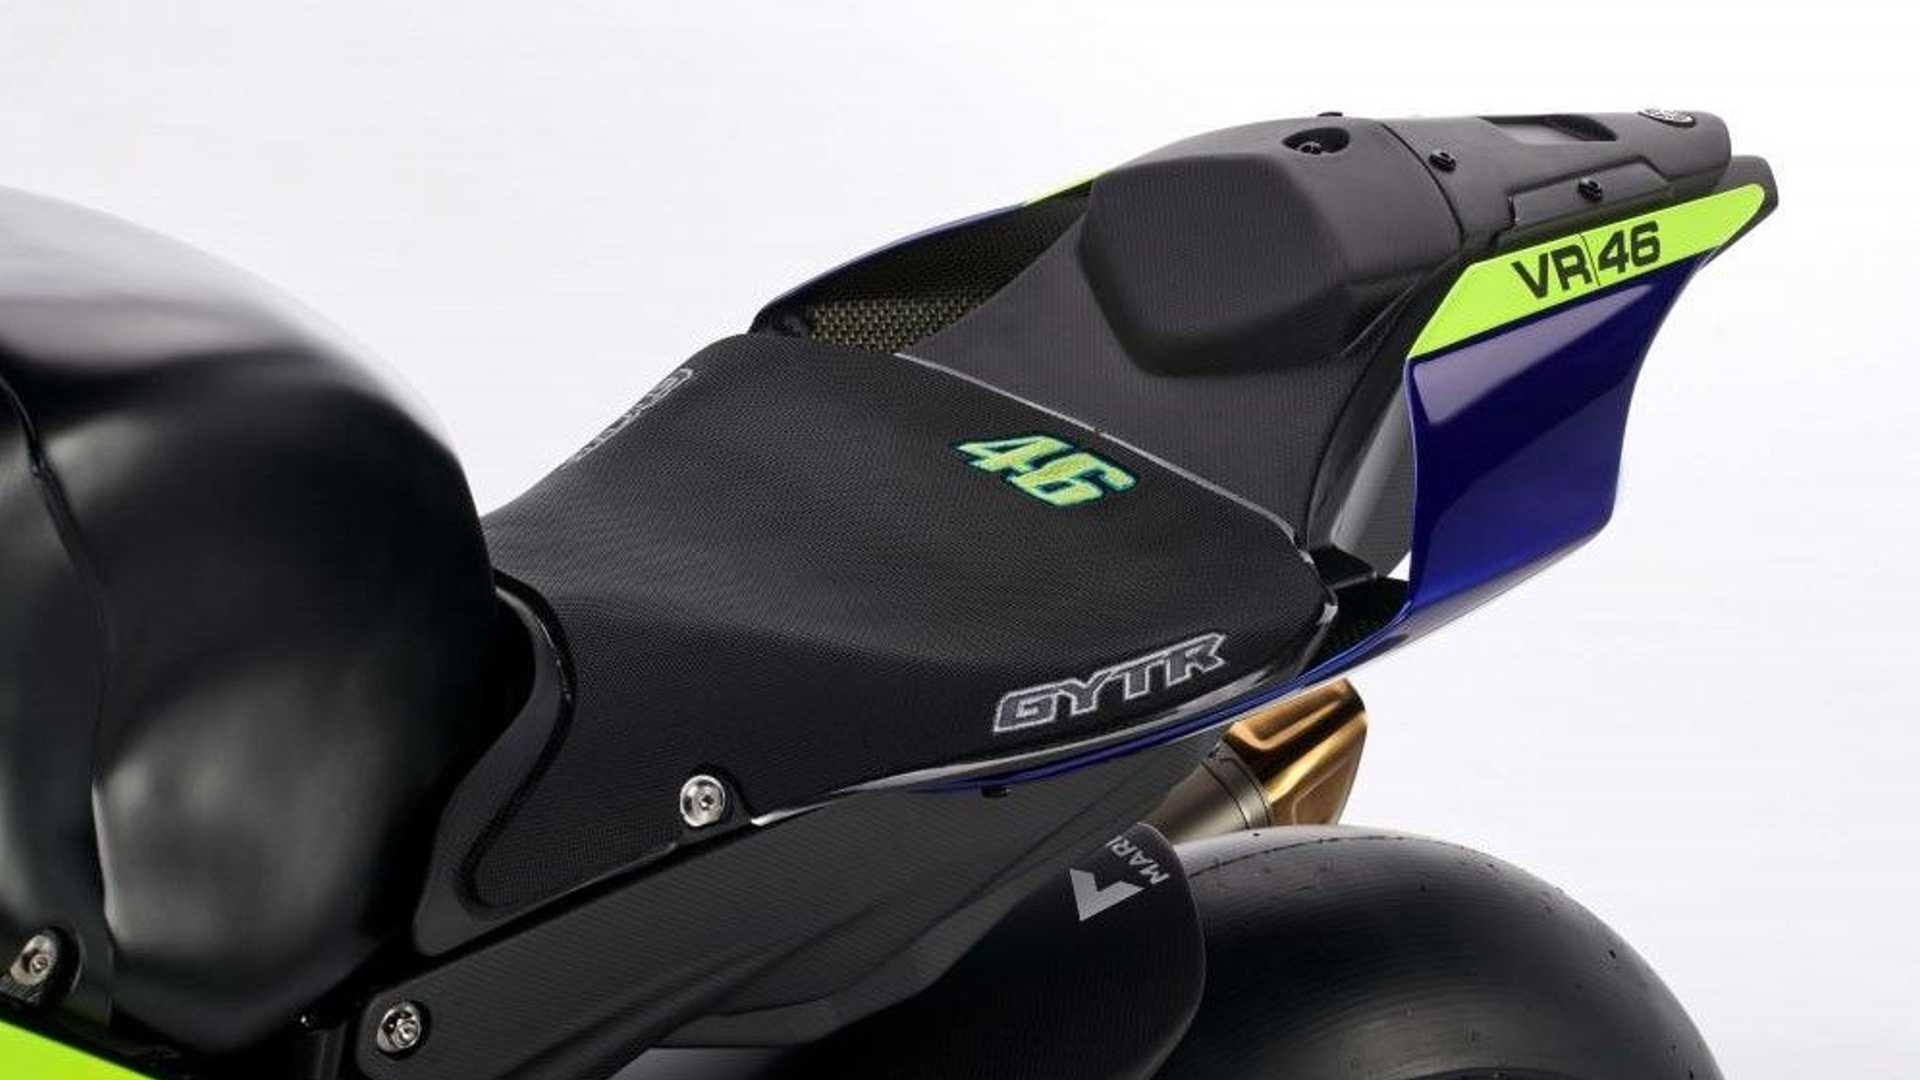 Yamaha YZR-R1 phiên bản đặc biệt vinh danh tay đua Valentino Rossi 2022-Yamaha-YZF-R1-GYTR-VR46-Tribute (3).jpg